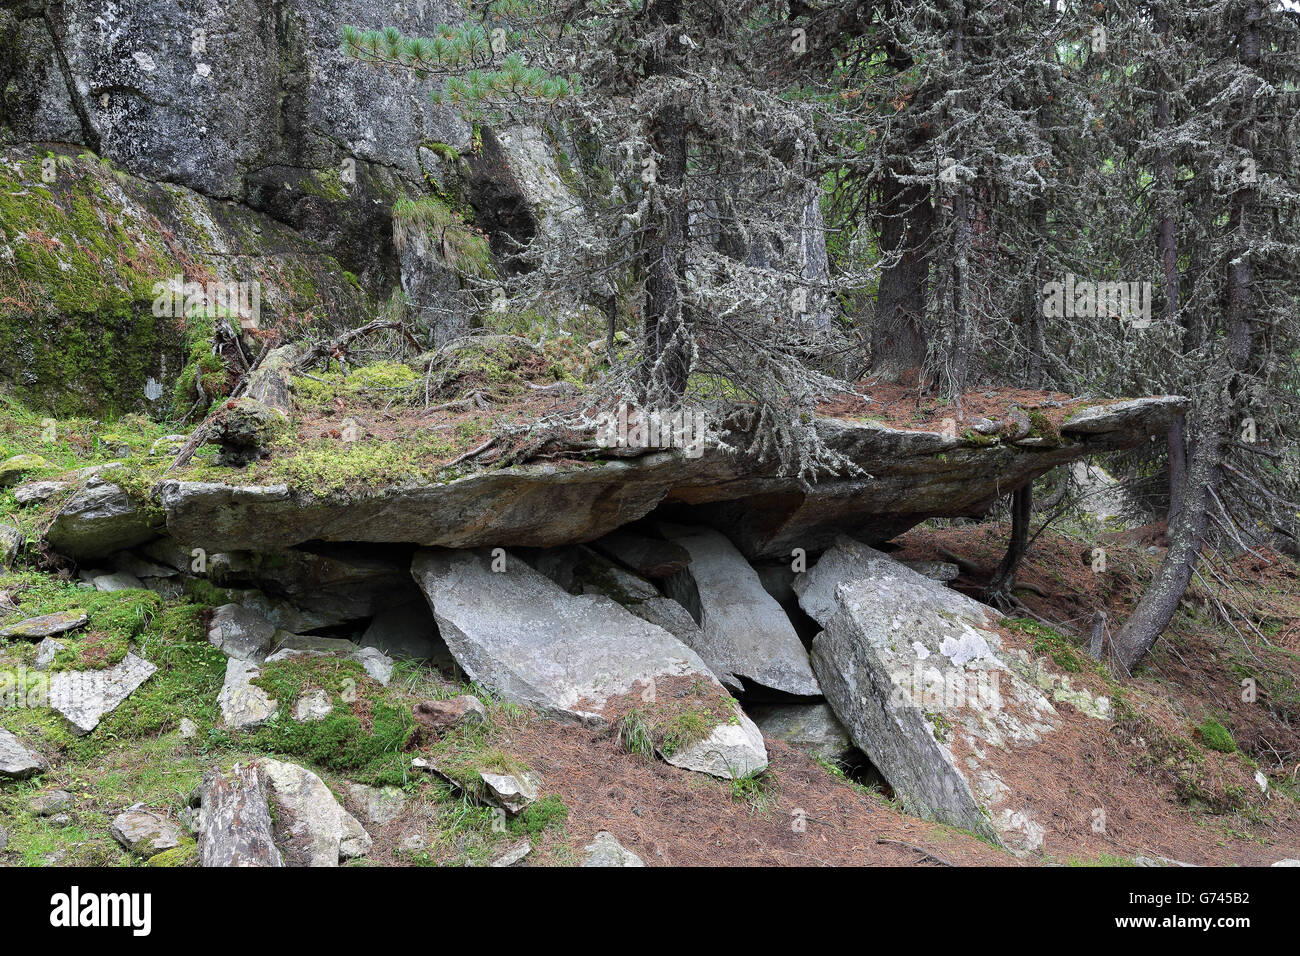 Swiss stone pine, Valais, Switzerland (Pinus cembra) Stock Photo